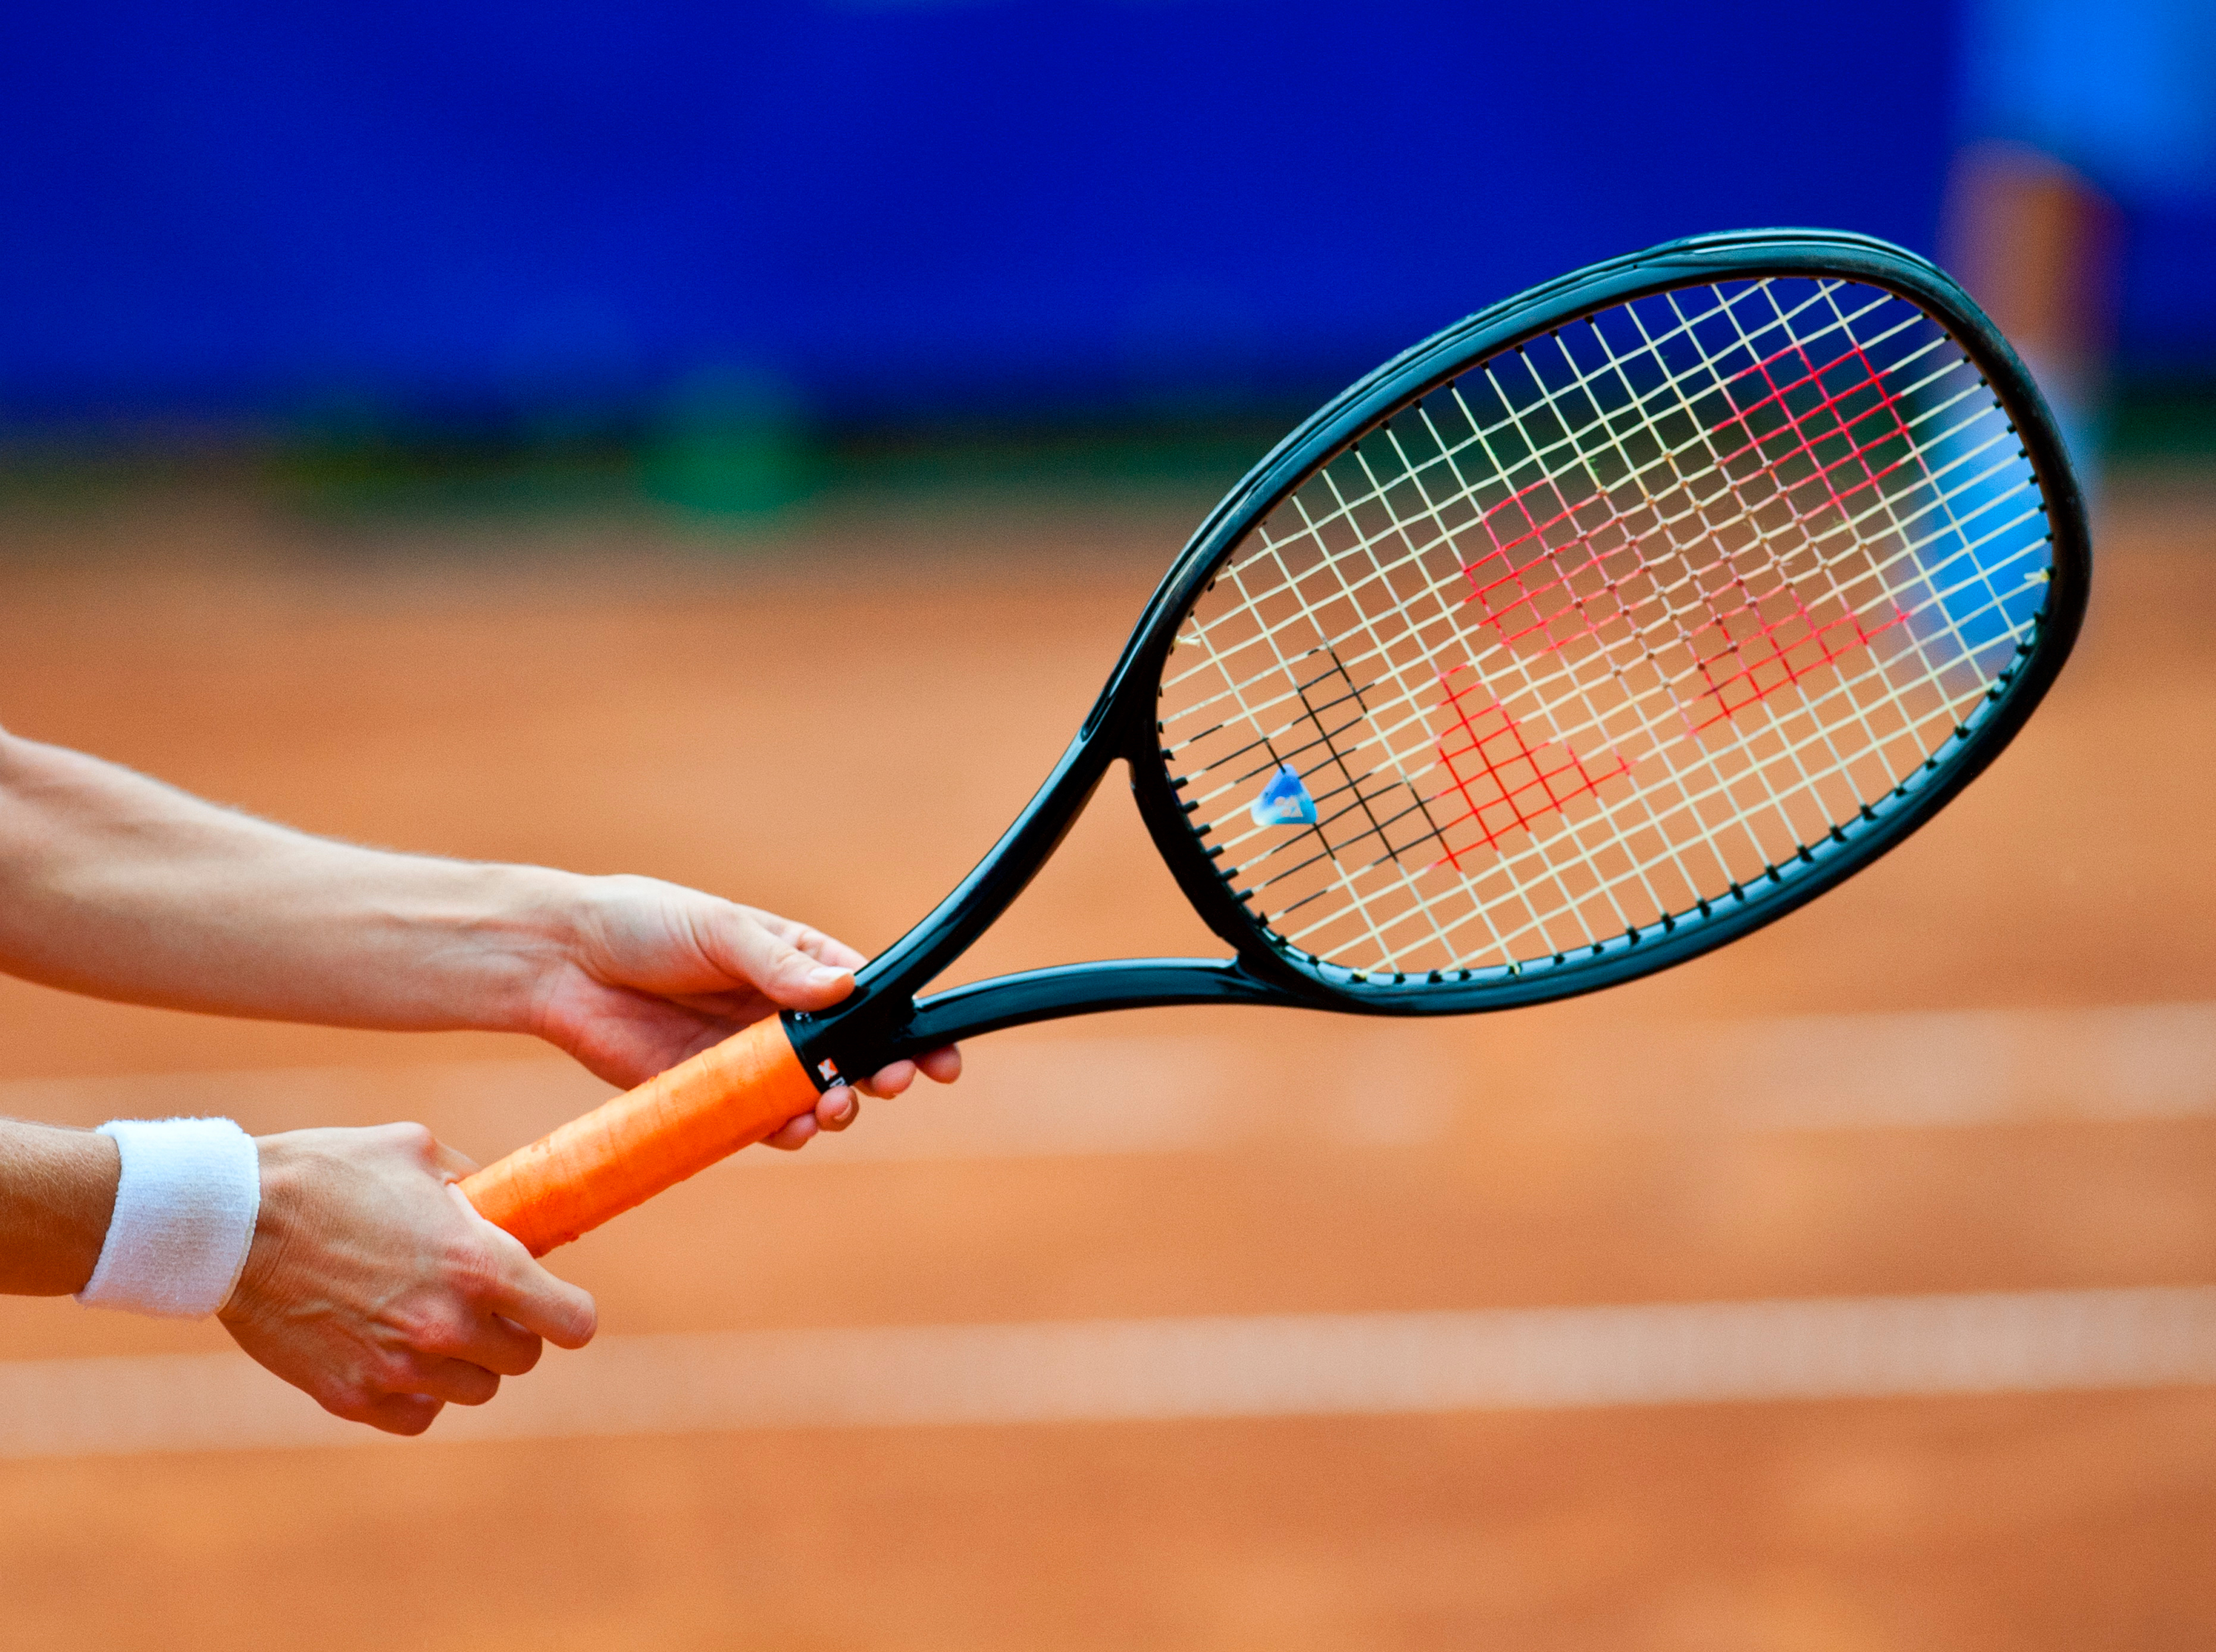 テニスでトップスピンをかけるグリップの握り方 テニスの悩みを解決するコツと練習方法